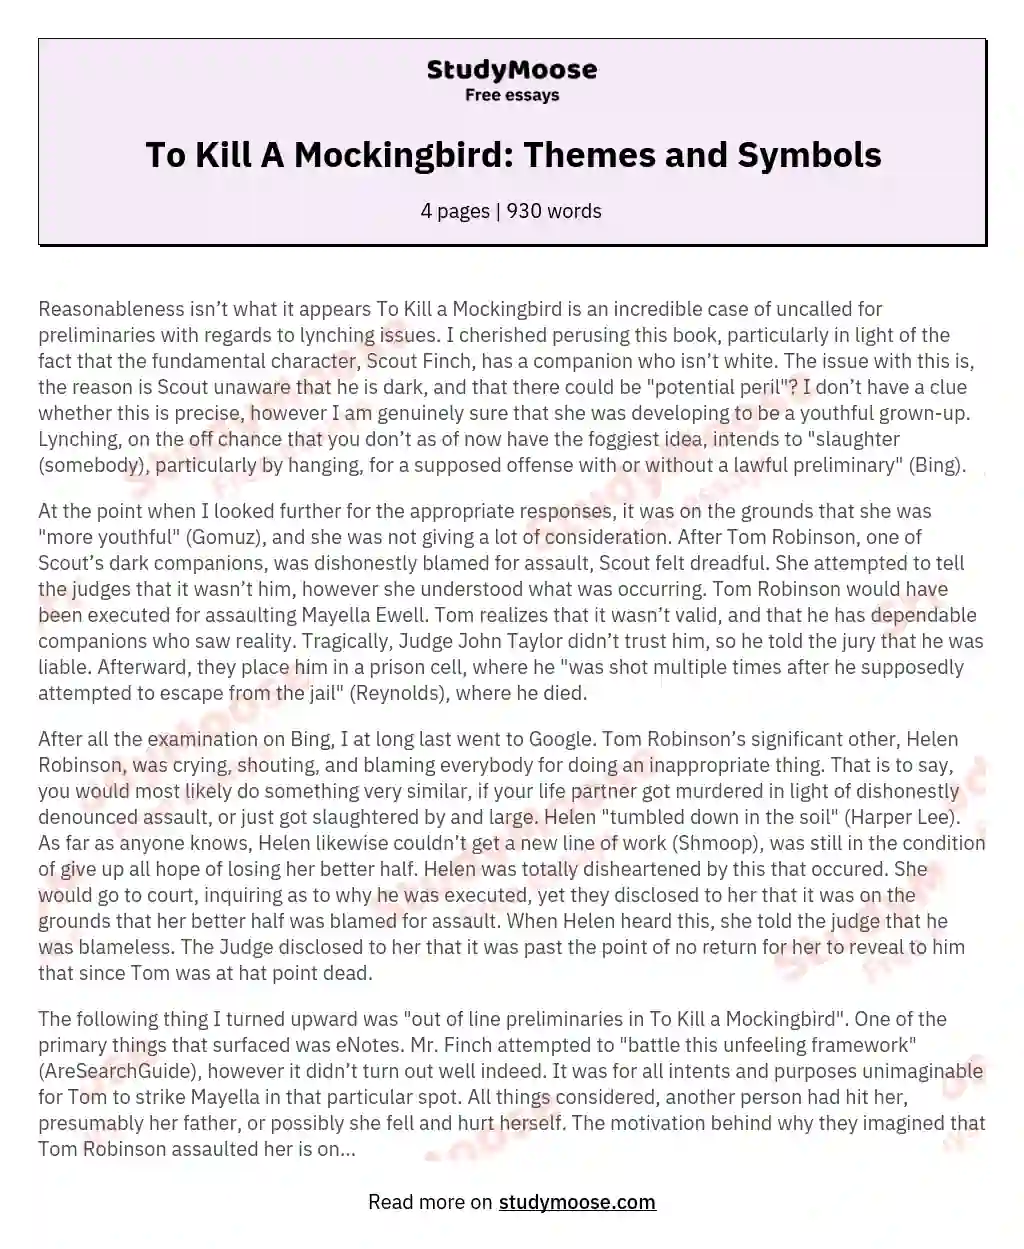 To Kill A Mockingbird: Themes and Symbols